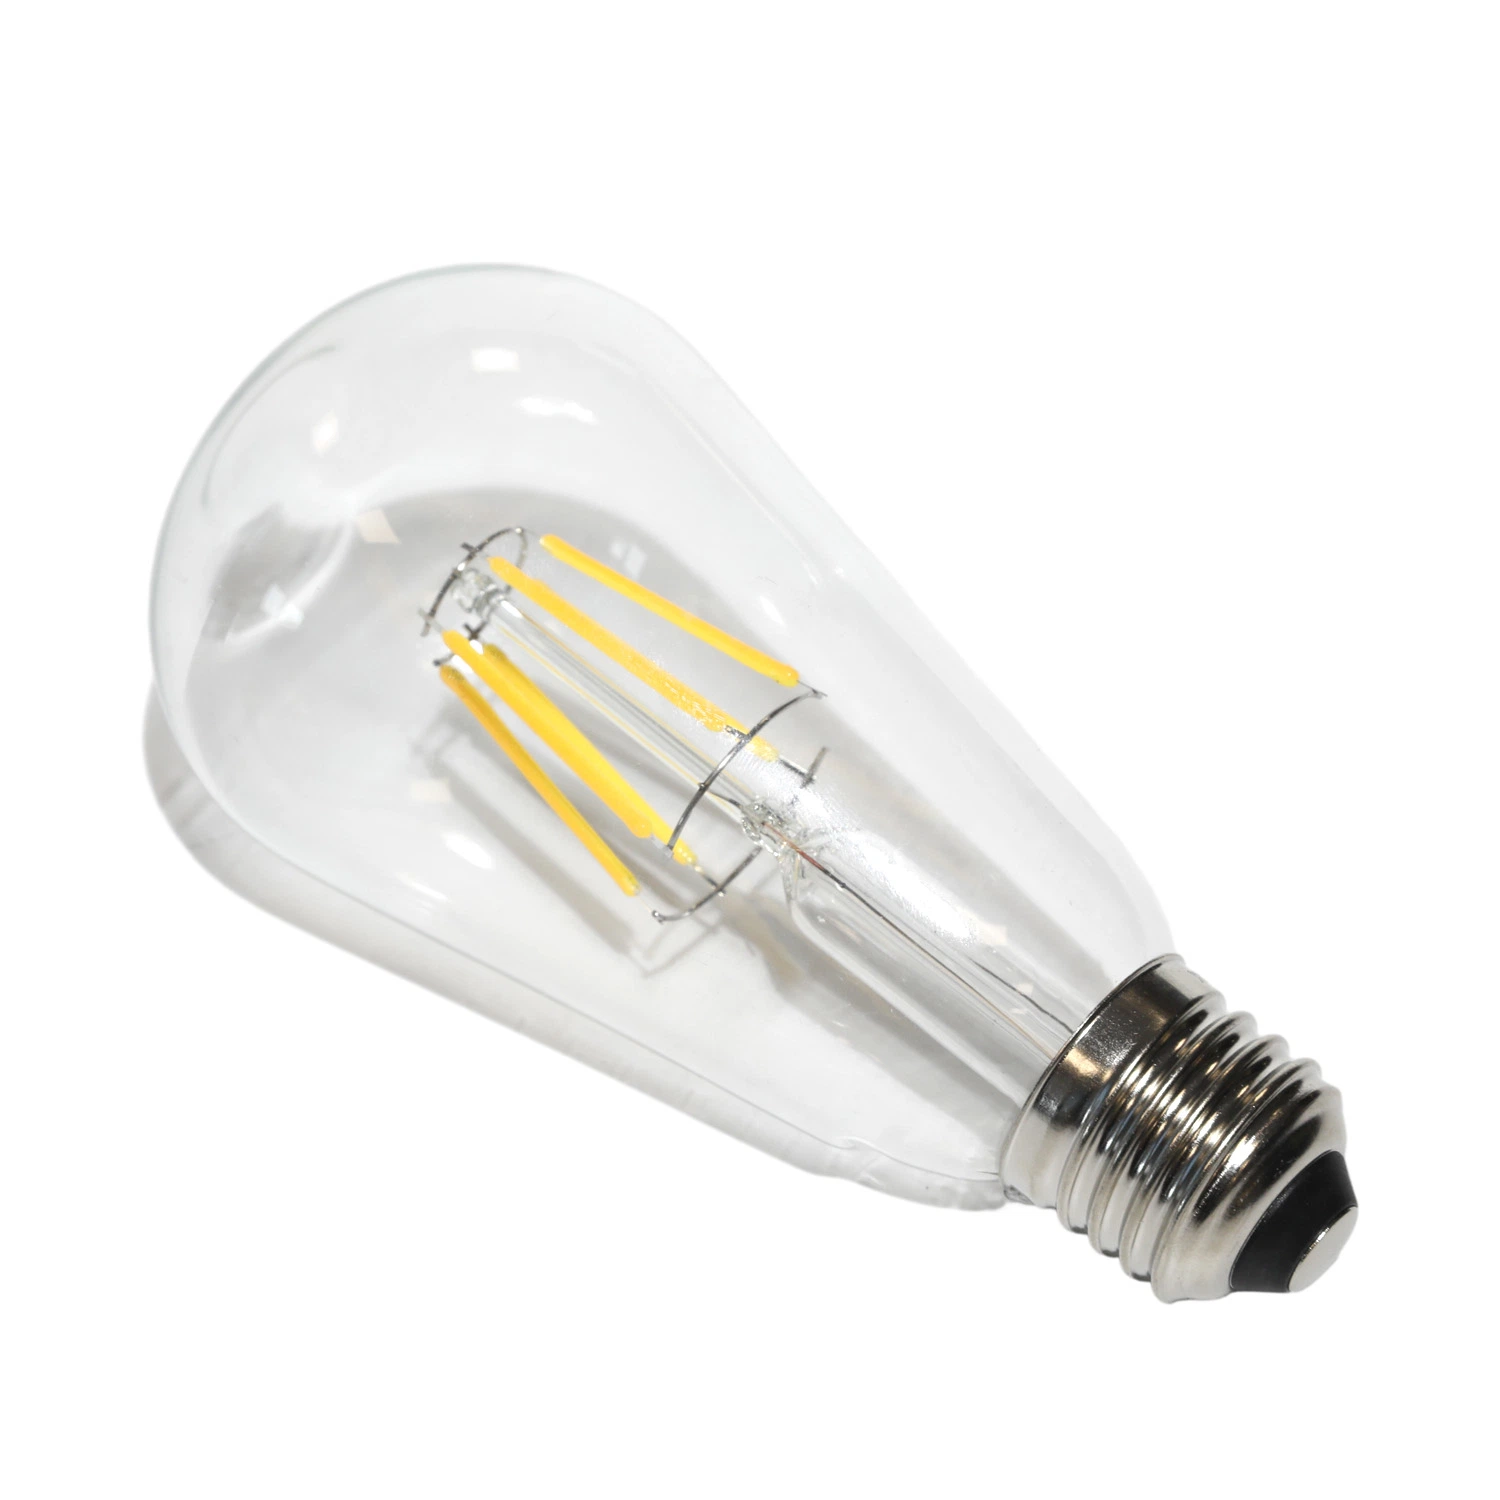 LED Filament Bulb Light LED Filament Light Candle Bulb St64 12W 8W